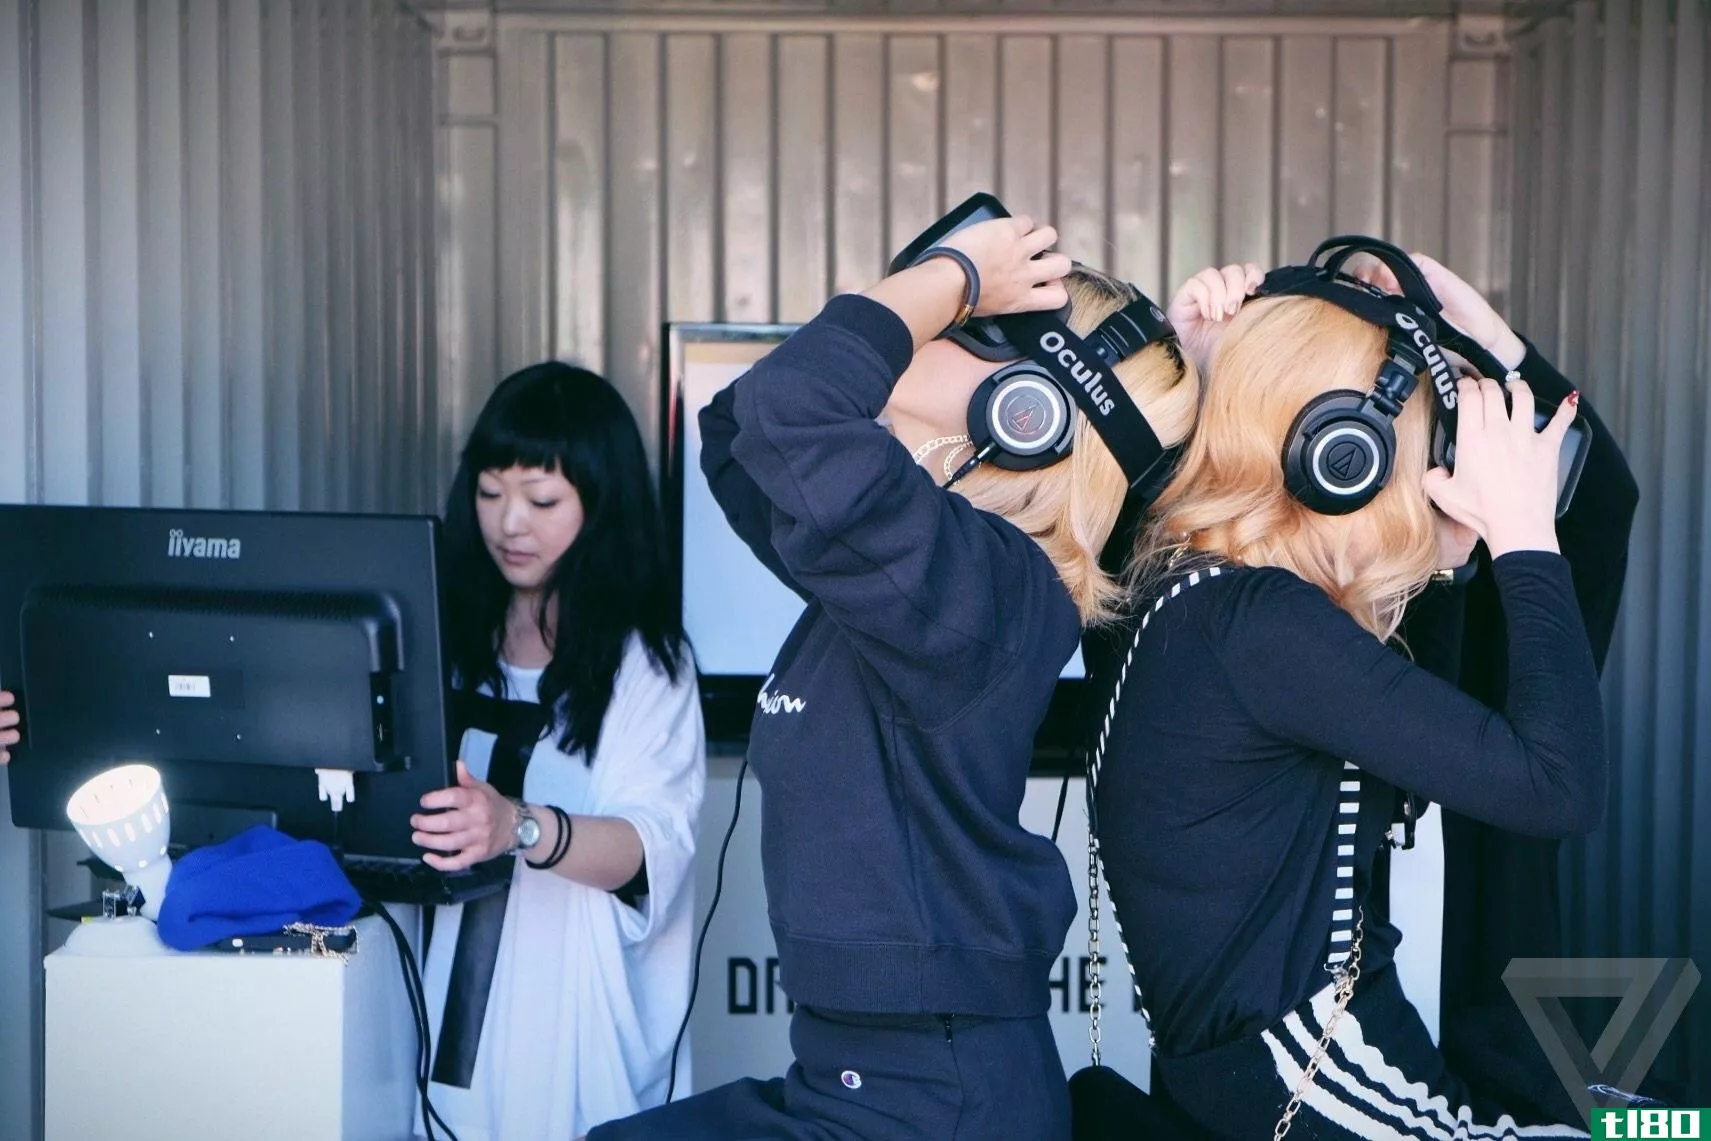 一个疯狂的j-pop音乐视频是迄今为止最好的oculus rift演示